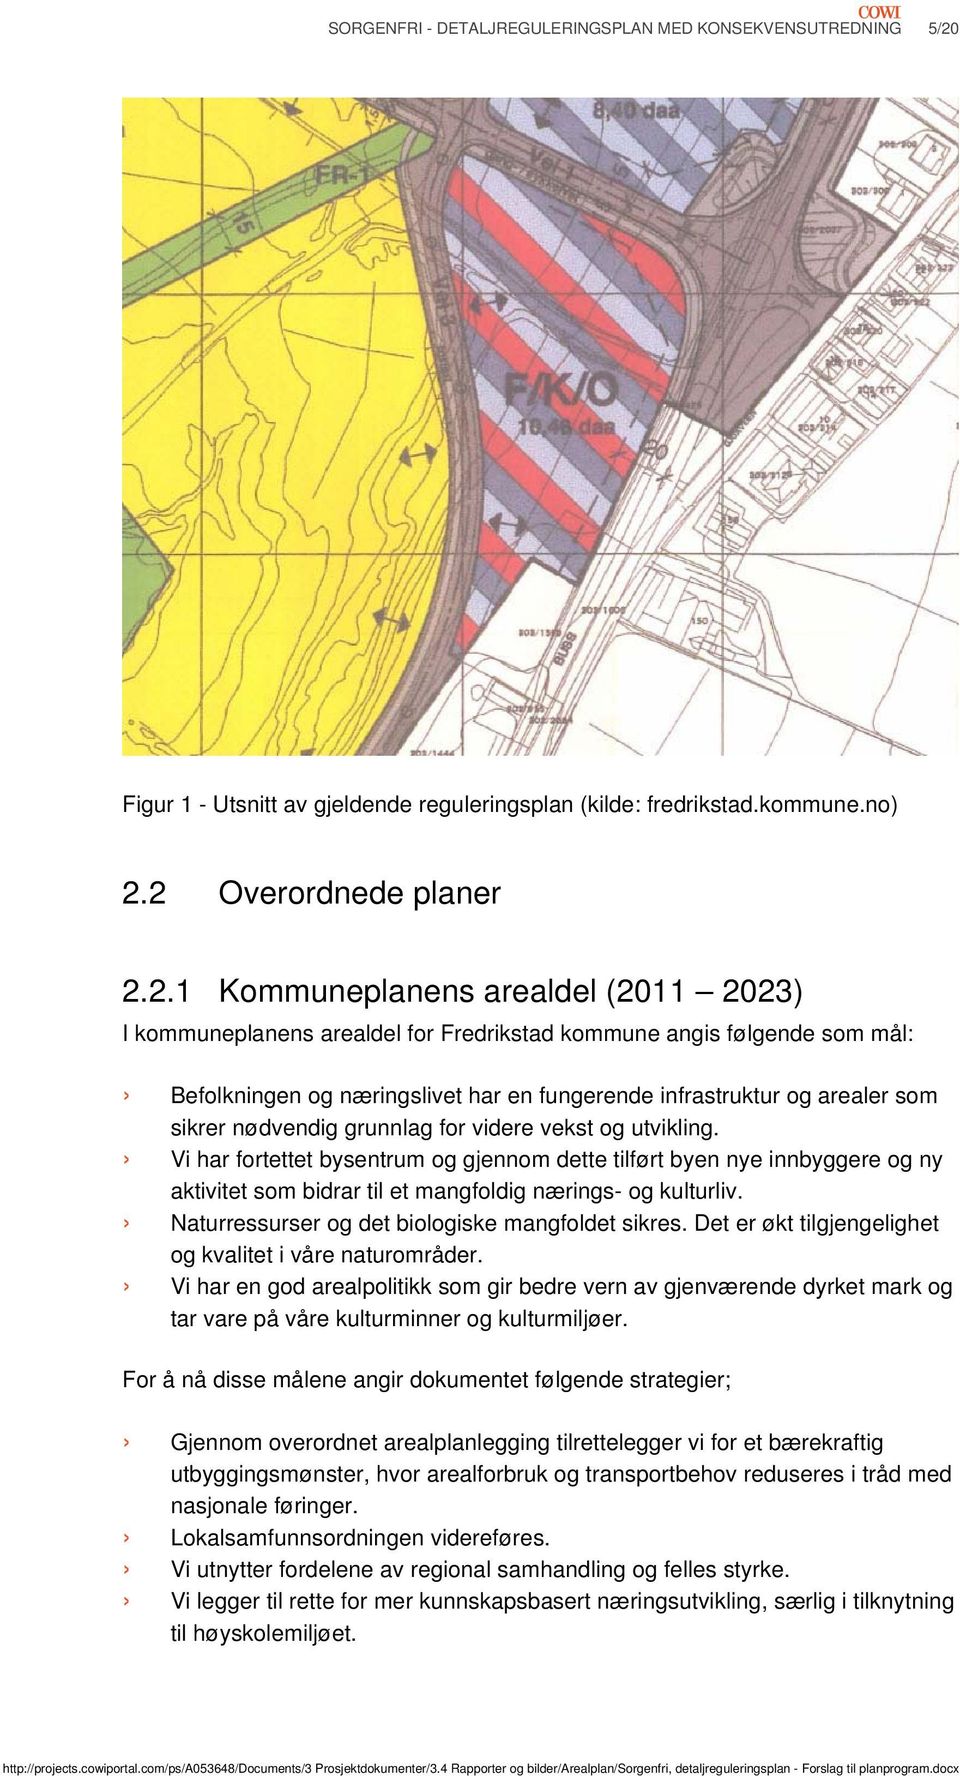 2 Overordnede planer 2.2.1 Kommuneplanens arealdel (2011 2023) I kommuneplanens arealdel for Fredrikstad kommune angis følgende som mål: Befolkningen og næringslivet har en fungerende infrastruktur